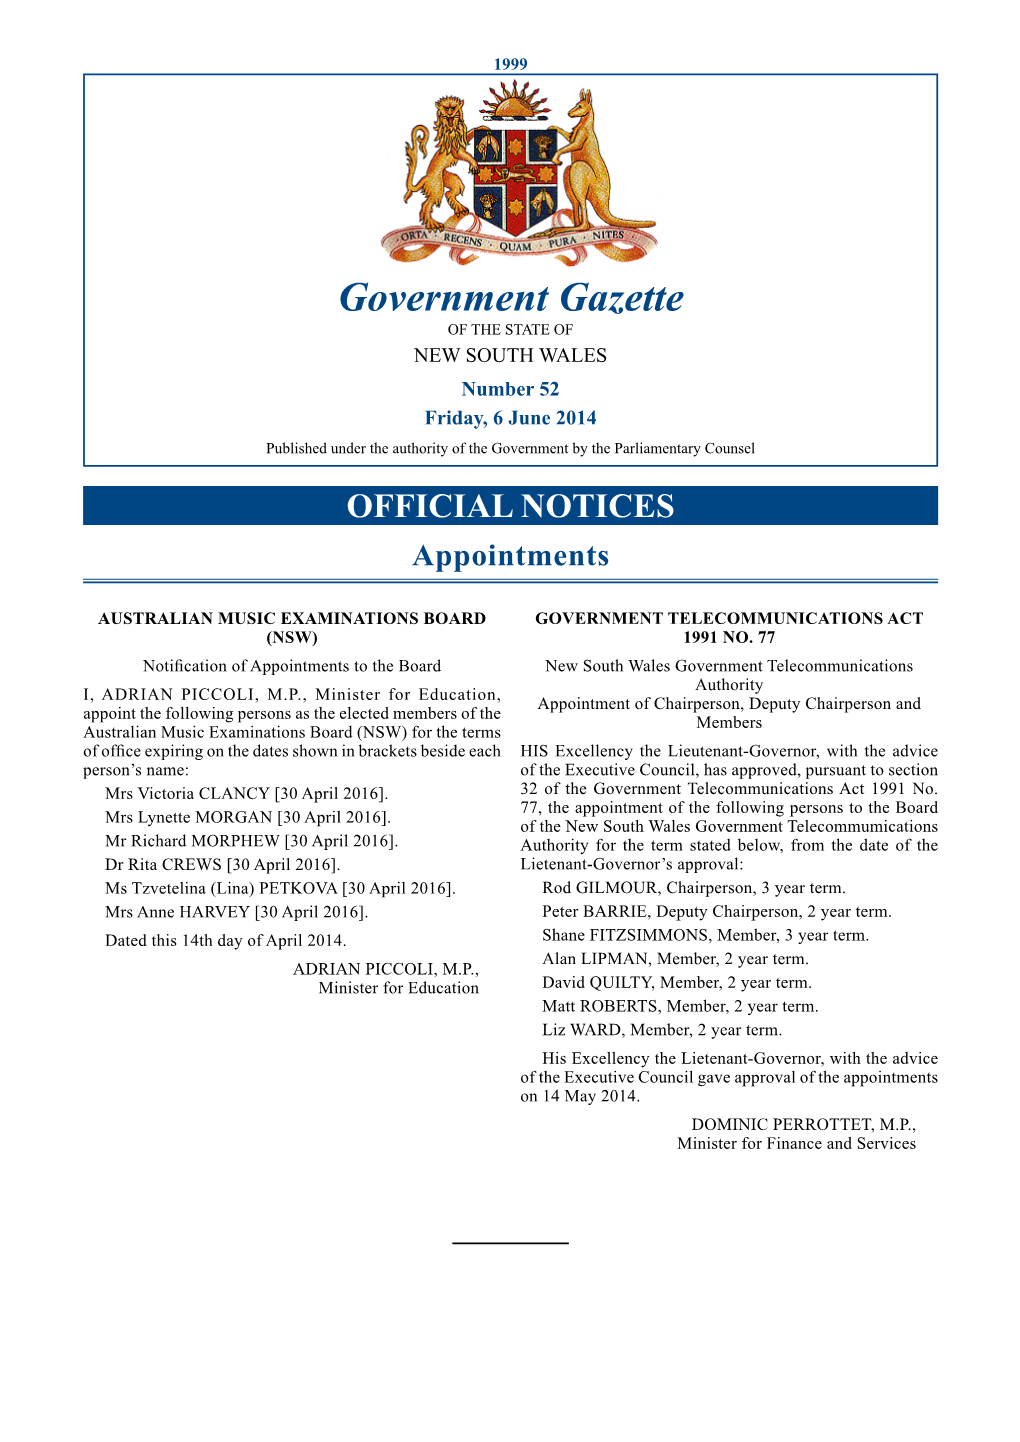 Government Gazette No 52 of 6 June 2014